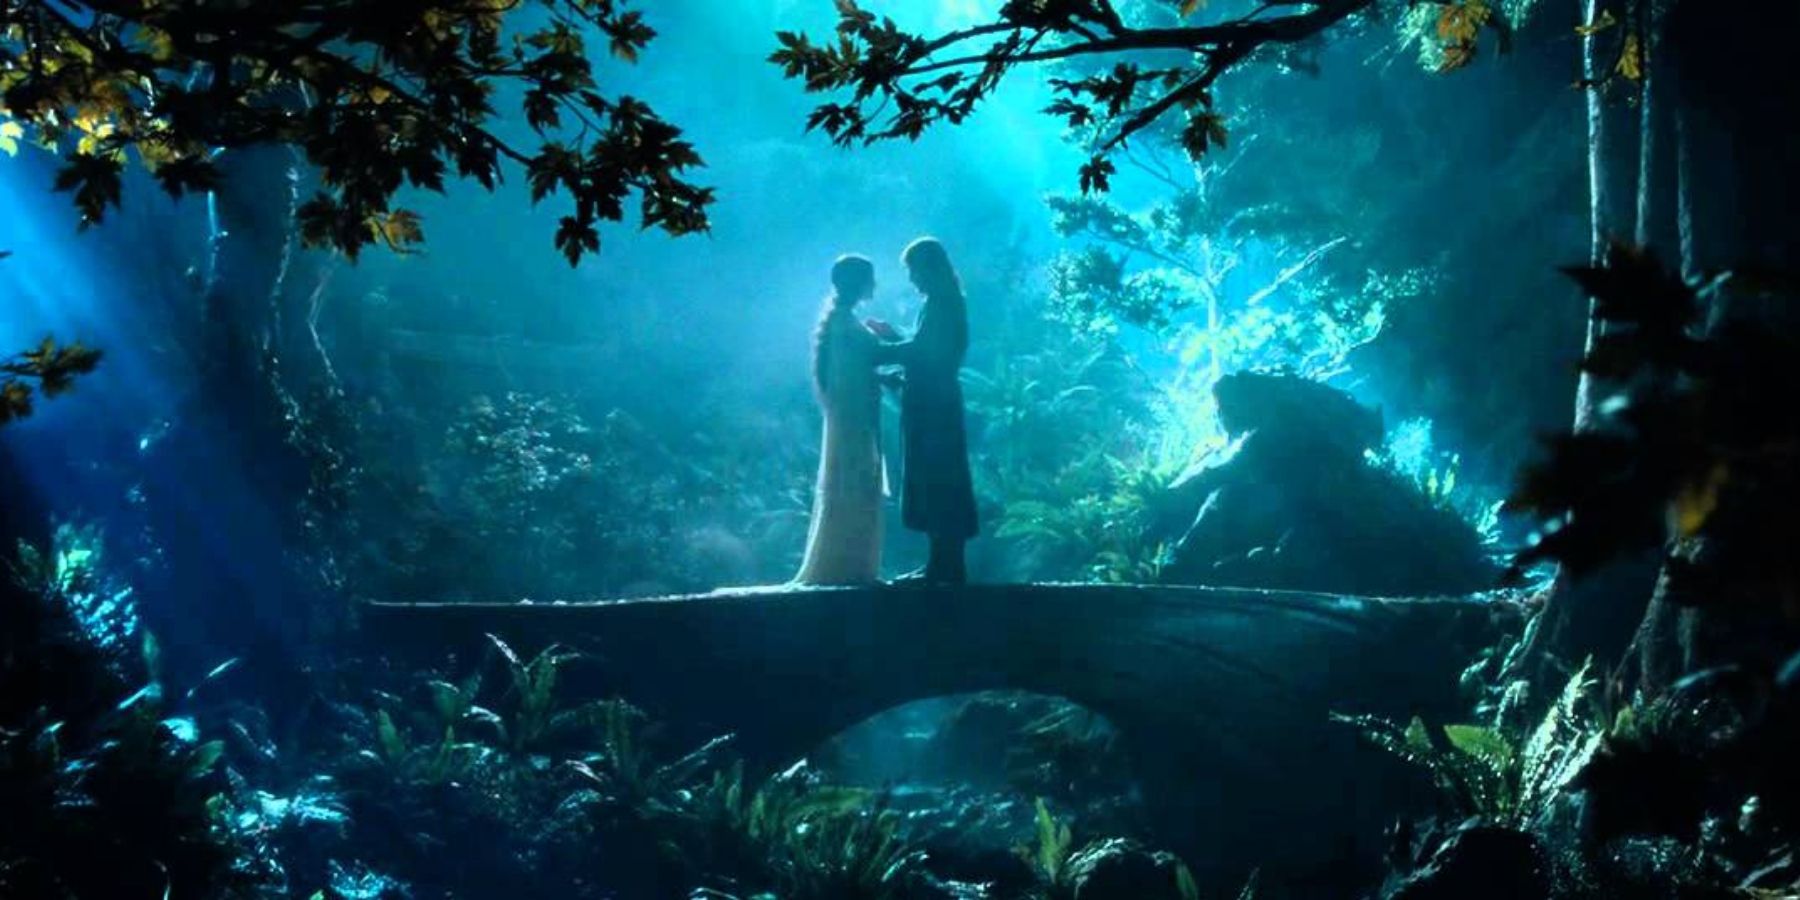 Arwen and Aragorn meet